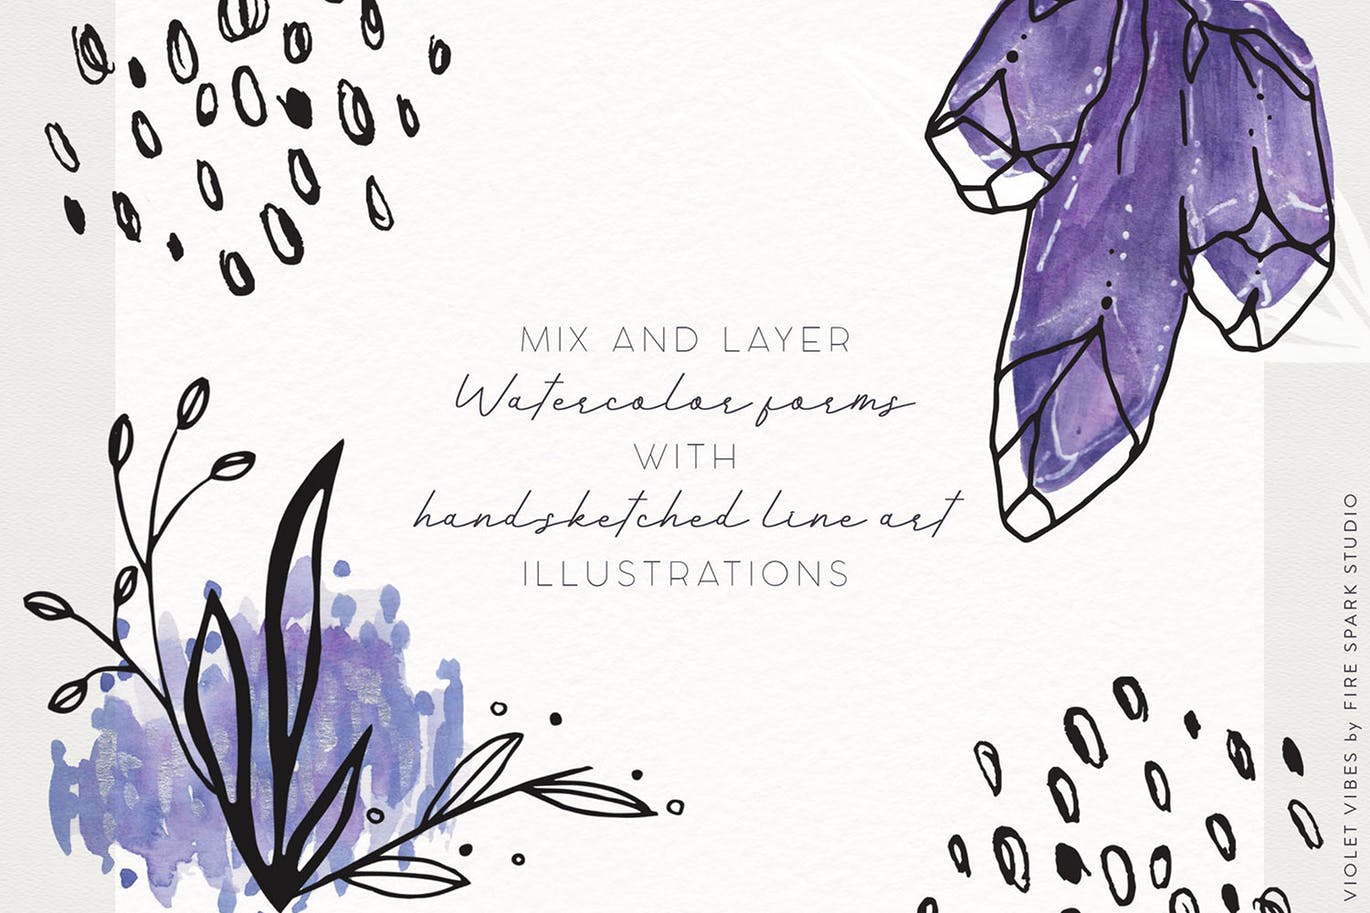 紫罗兰色时尚水彩手绘设计套件 Violet Vibes Graphic Art Kit插图(1)